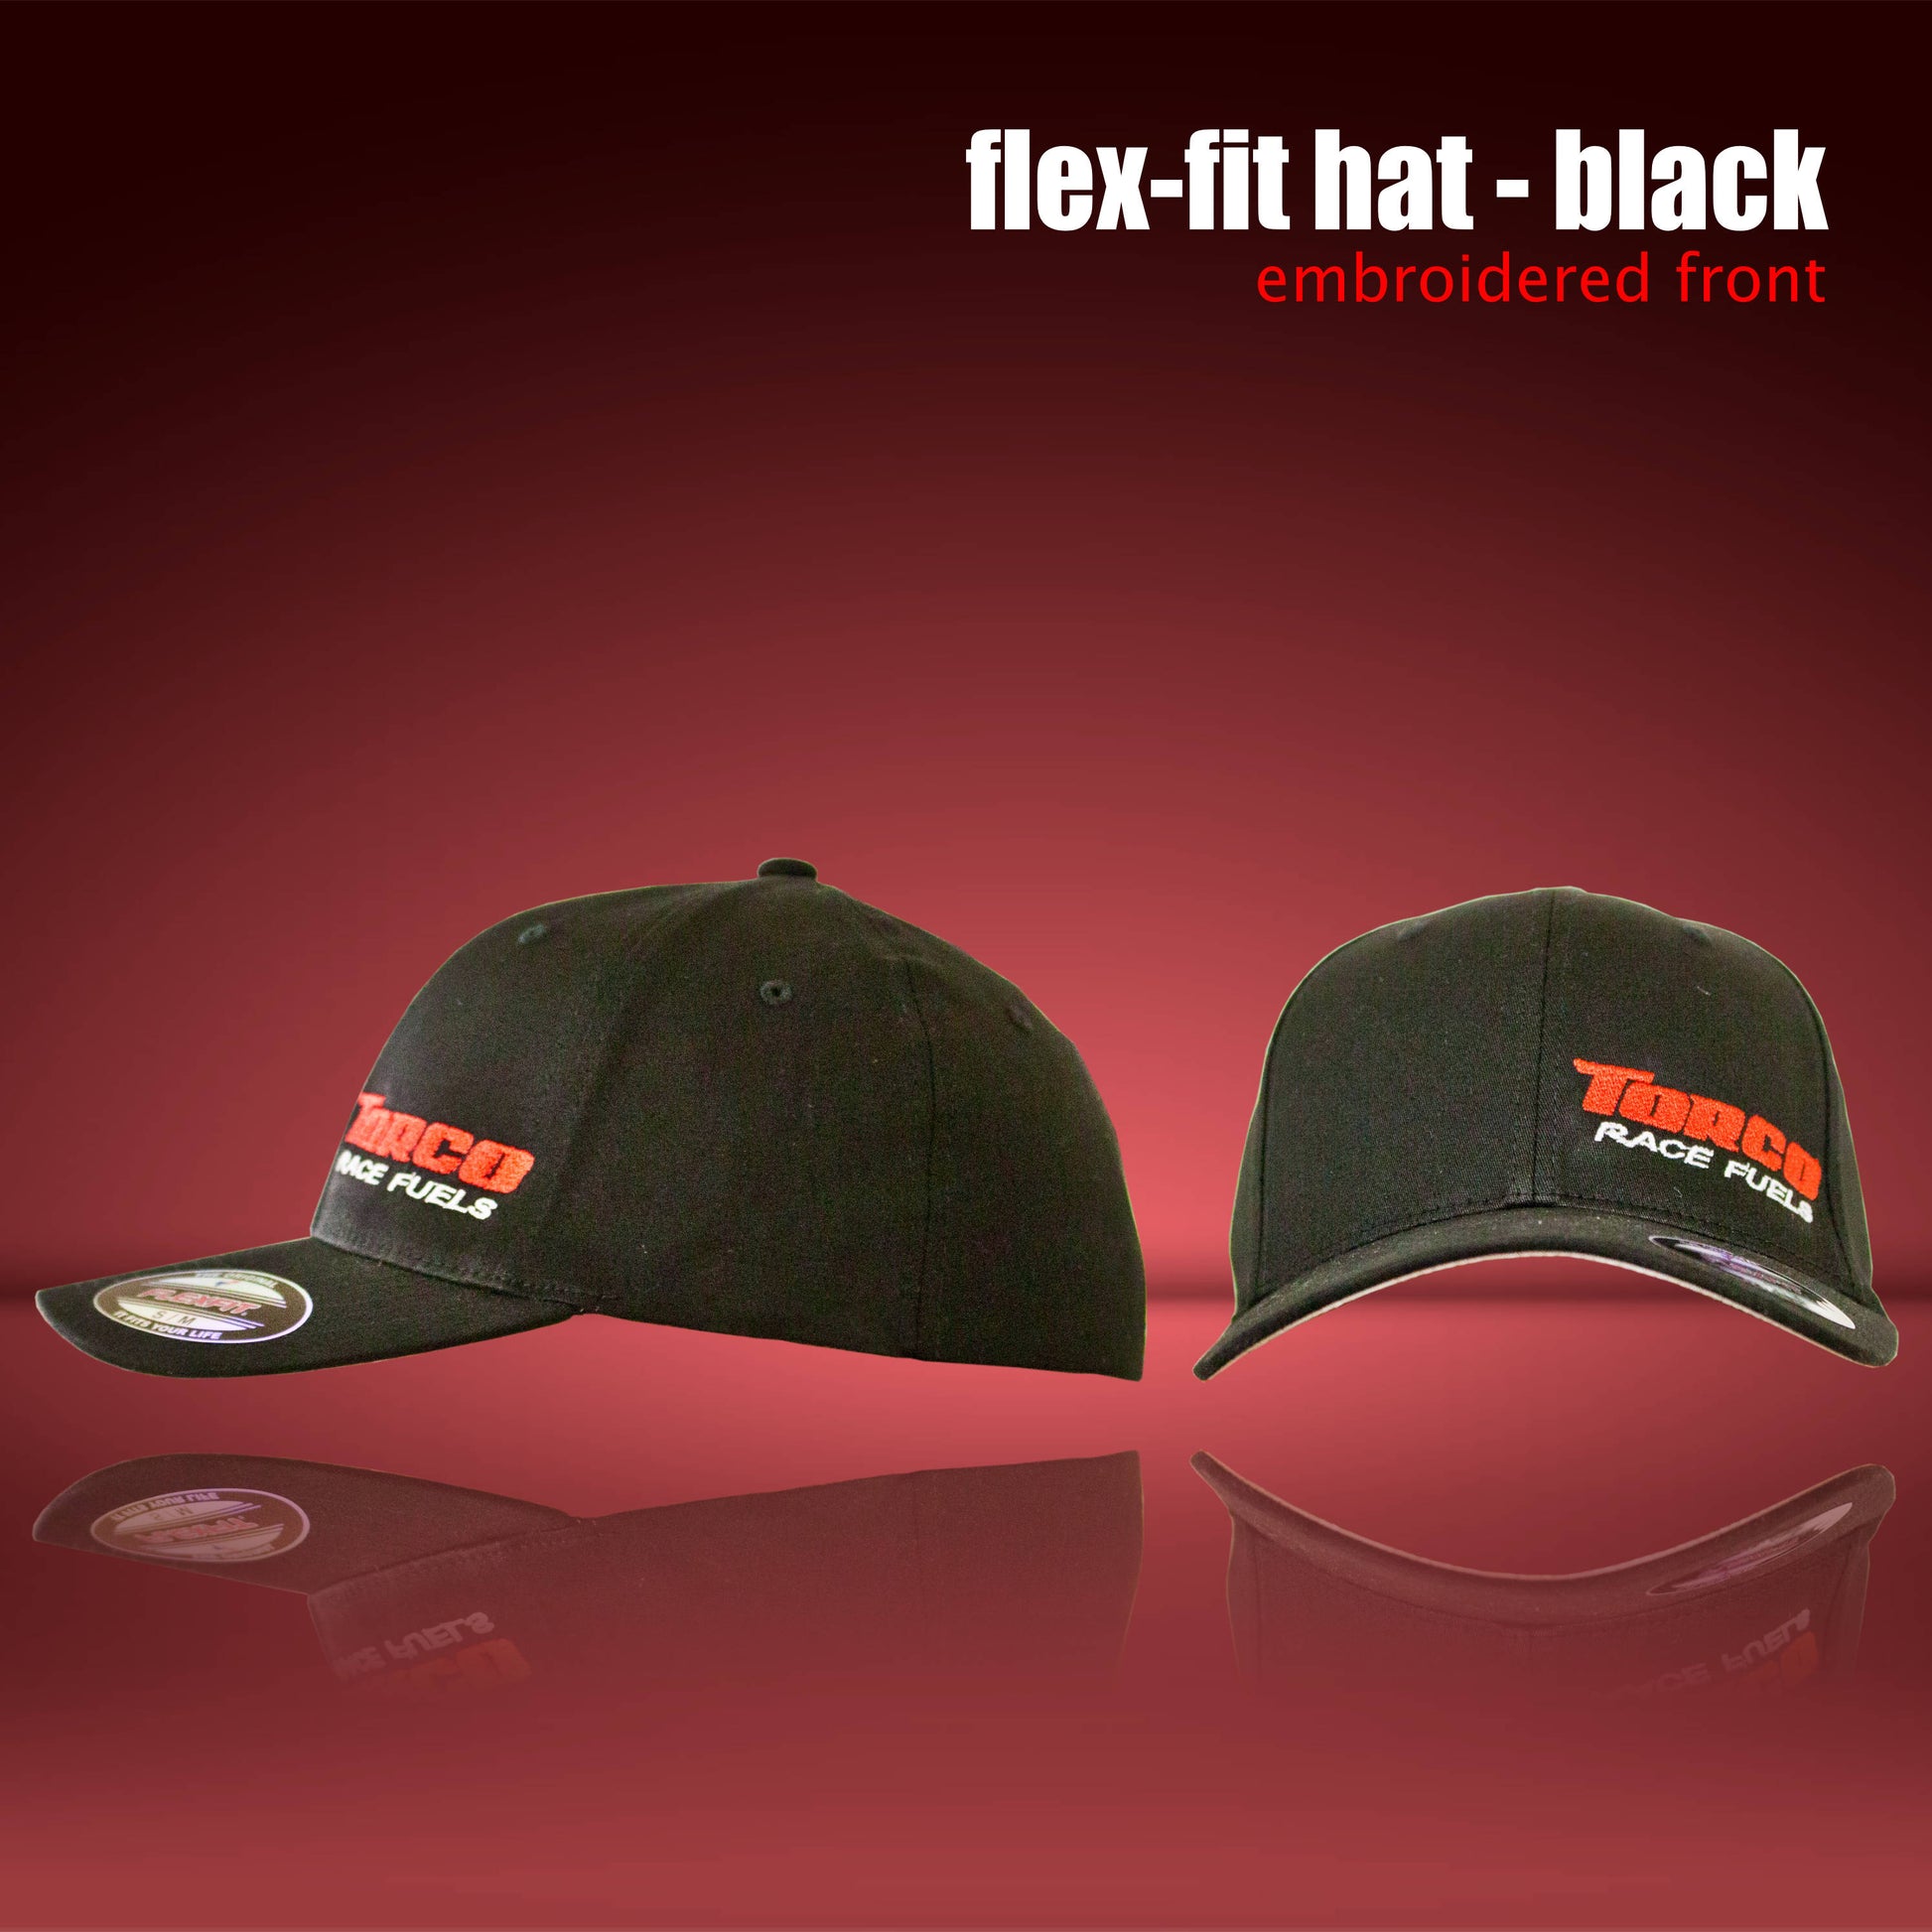 Torco Race Fuels Black flex-fit hat